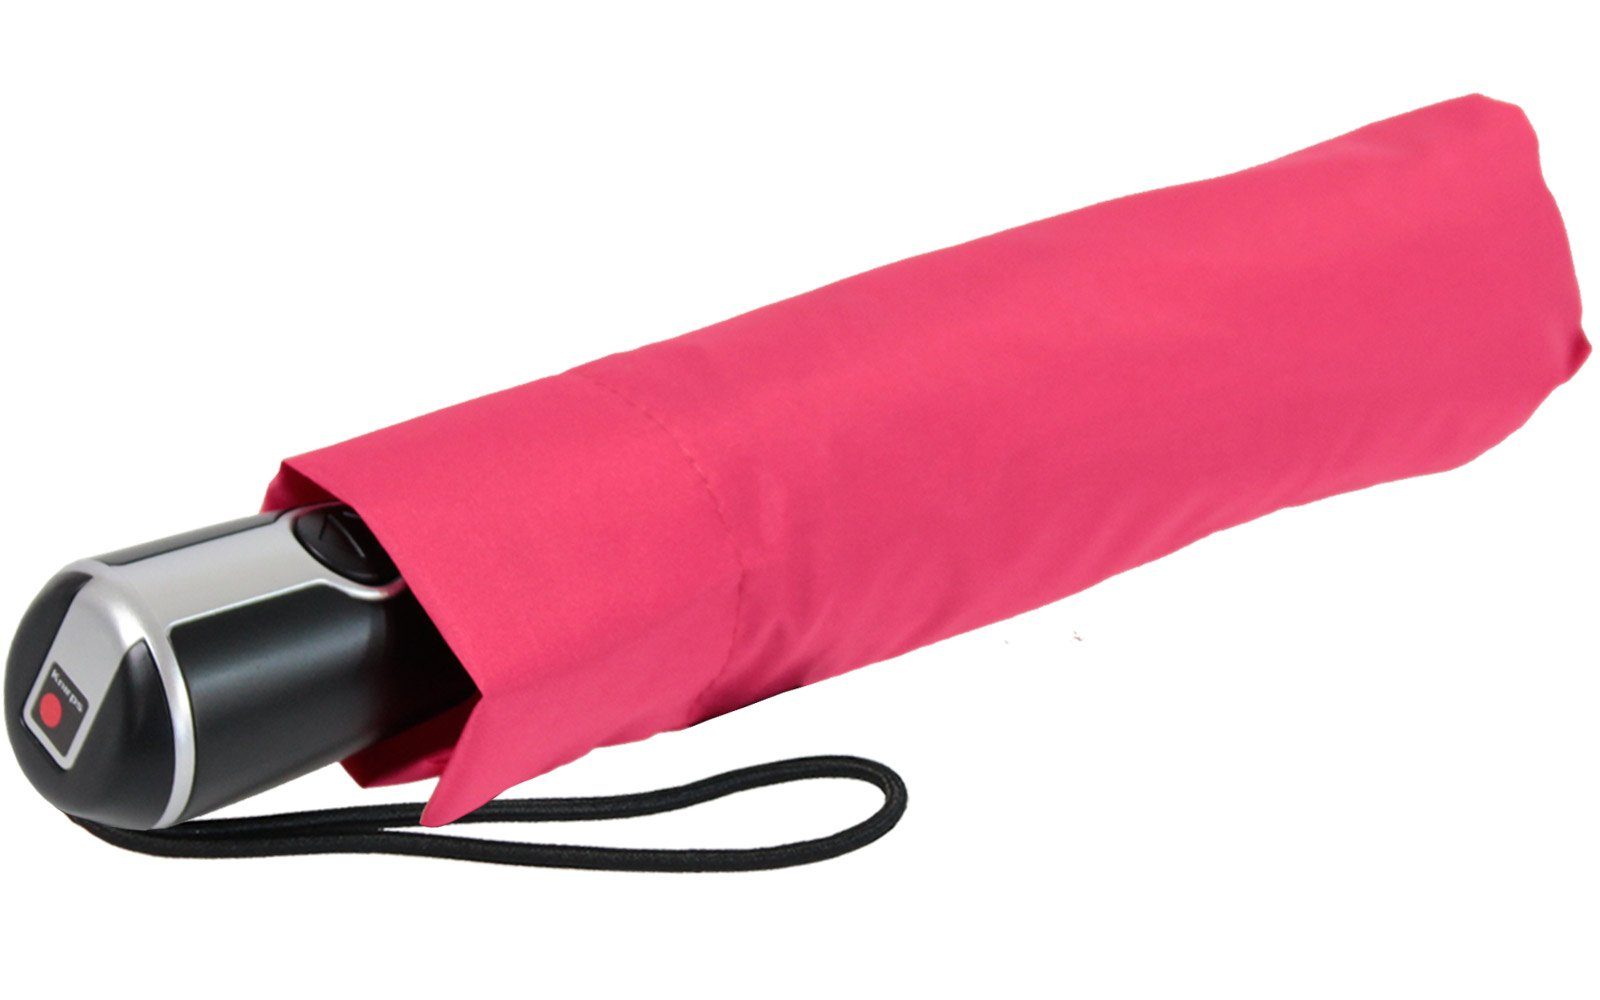 Auf-Zu-Automatik Schirm Taschenregenschirm Begleiter für großer große, mit Knirps® der Damen, stabile